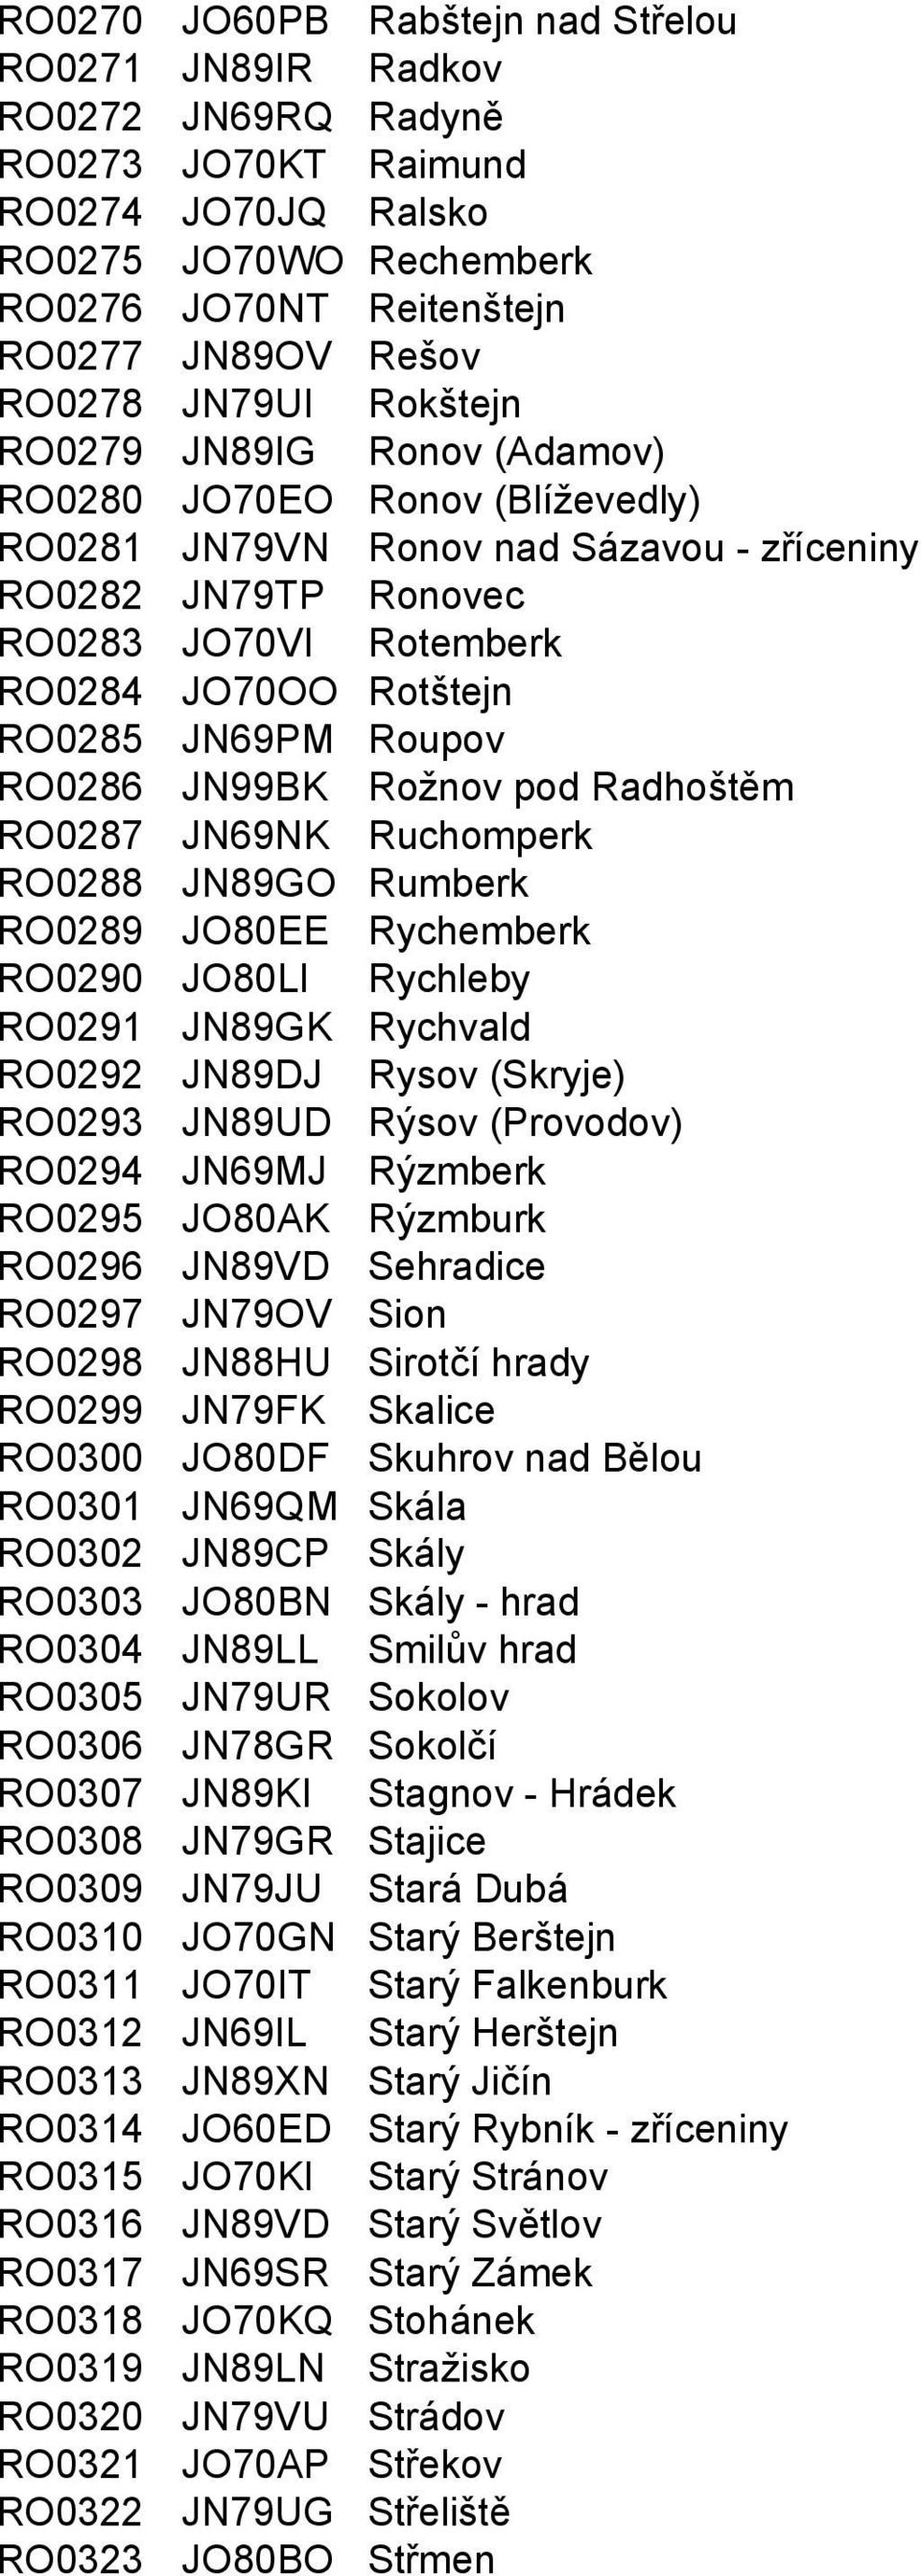 JN69PM Roupov RO0286 JN99BK Rožnov pod Radhoštěm RO0287 JN69NK Ruchomperk RO0288 JN89GO Rumberk RO0289 JO80EE Rychemberk RO0290 JO80LI Rychleby RO0291 JN89GK Rychvald RO0292 JN89DJ Rysov (Skryje)